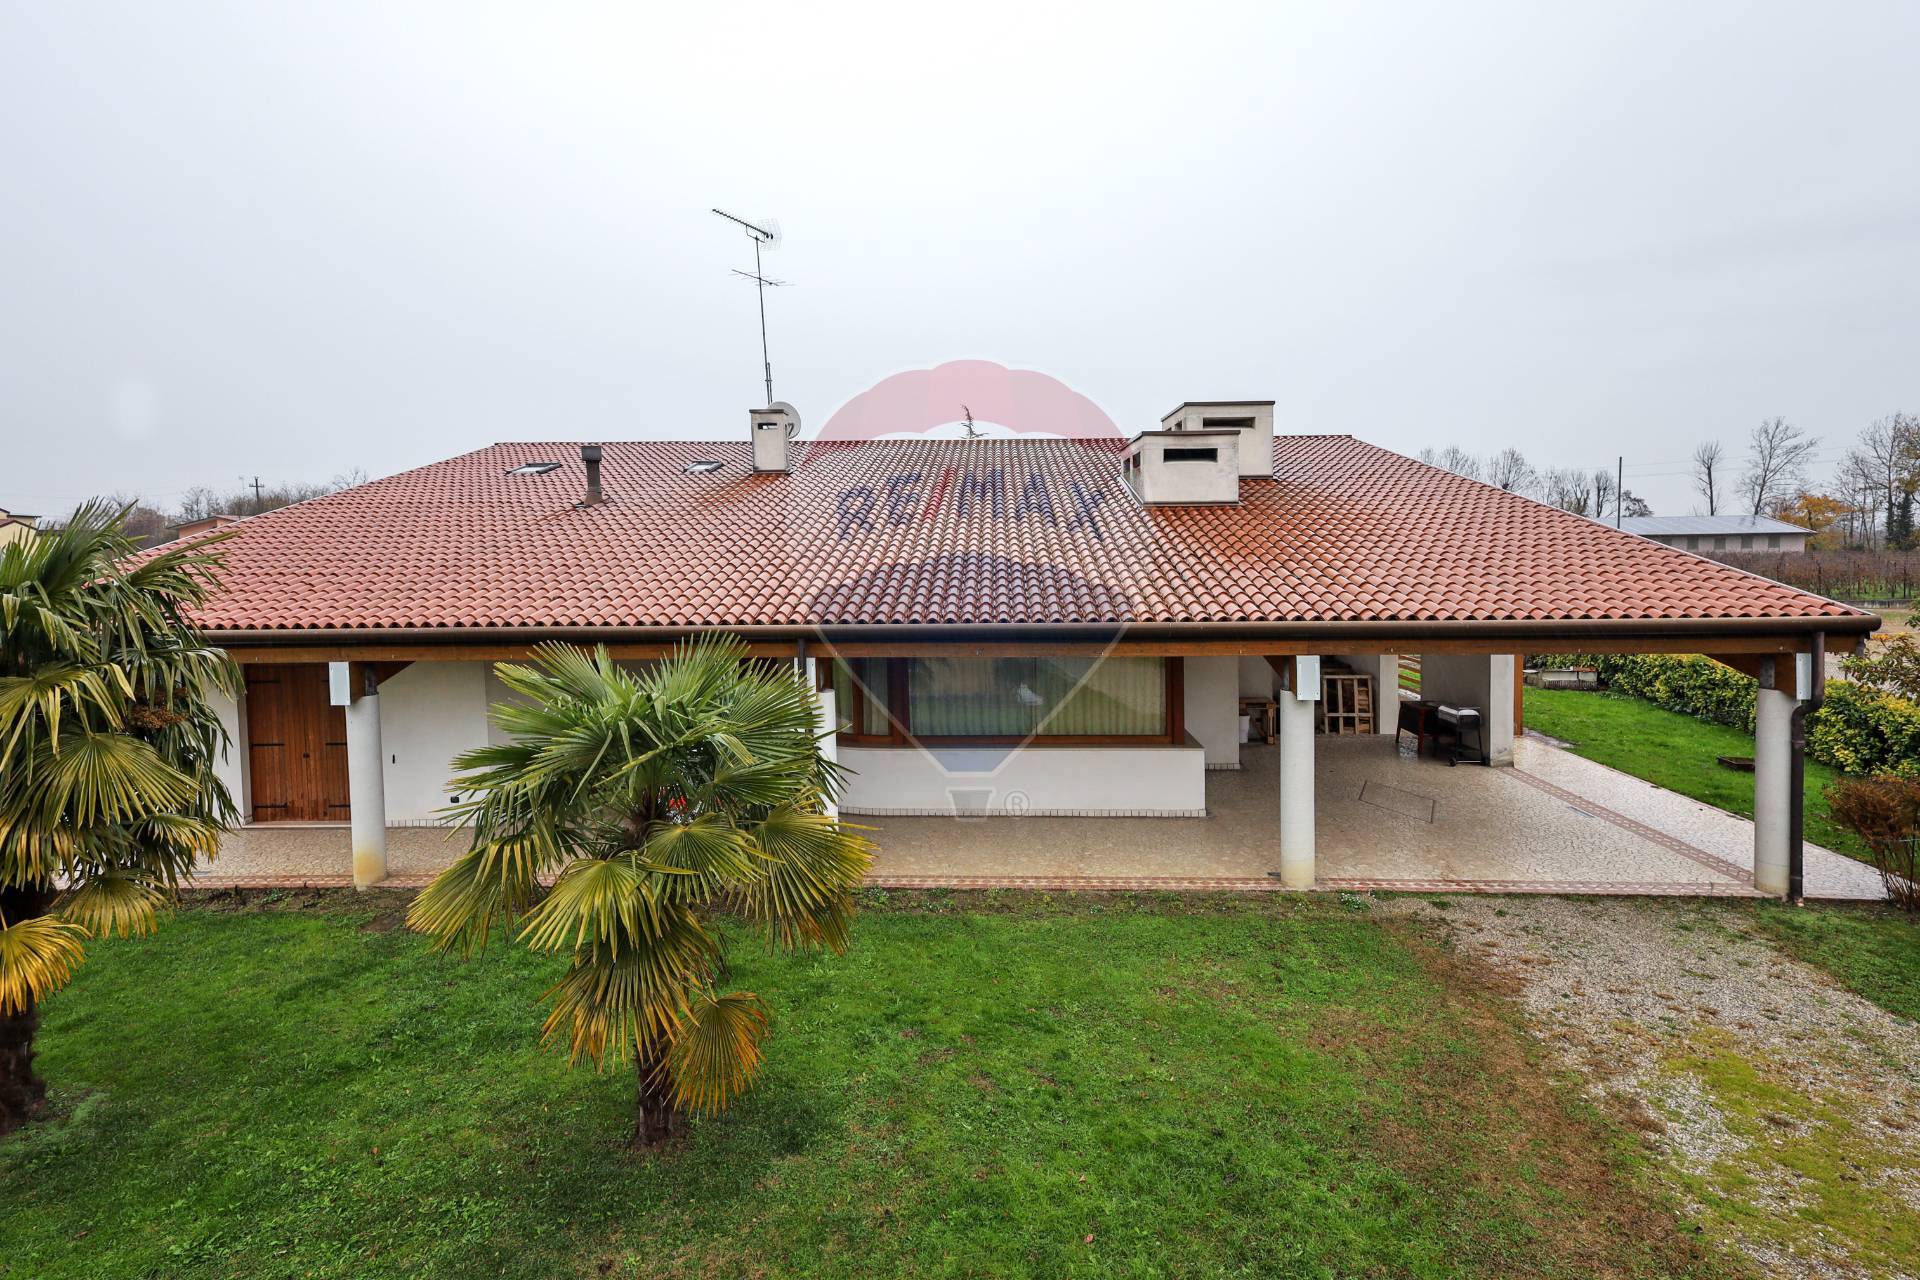 Villa in vendita a Vazzola, 7 locali, zona Località: Visn?, prezzo € 319.000 | PortaleAgenzieImmobiliari.it